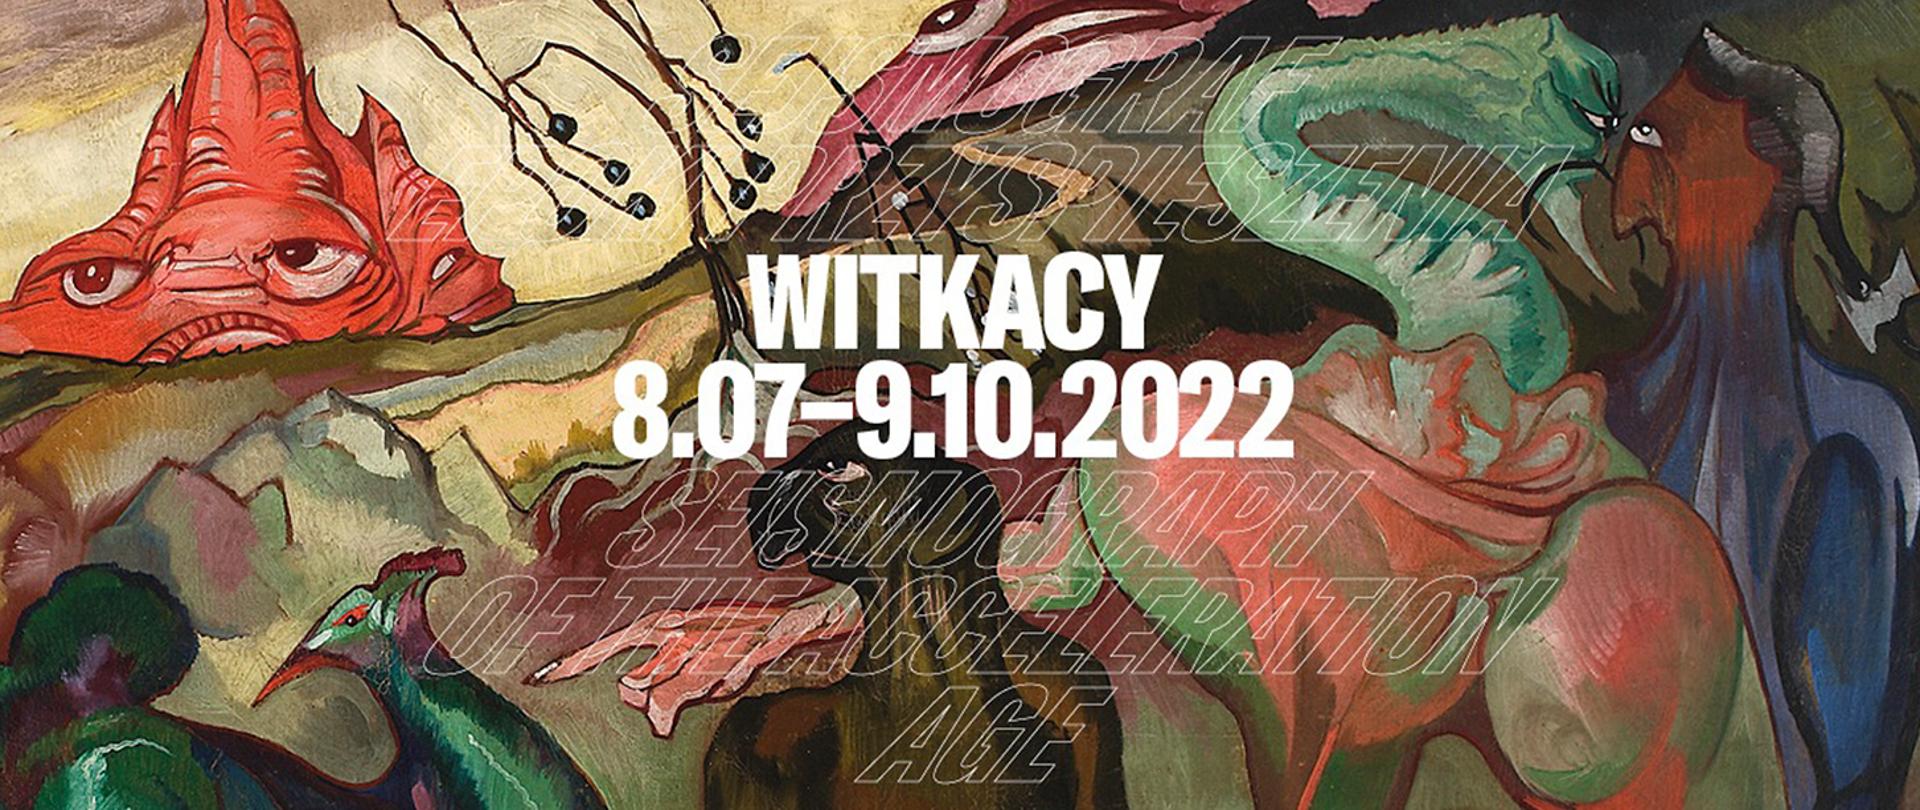 Kadr przedstawia pracę artysty Witkacego, na plakacie informującym o wystawie w Muzeum Narodowym w Warszawie.